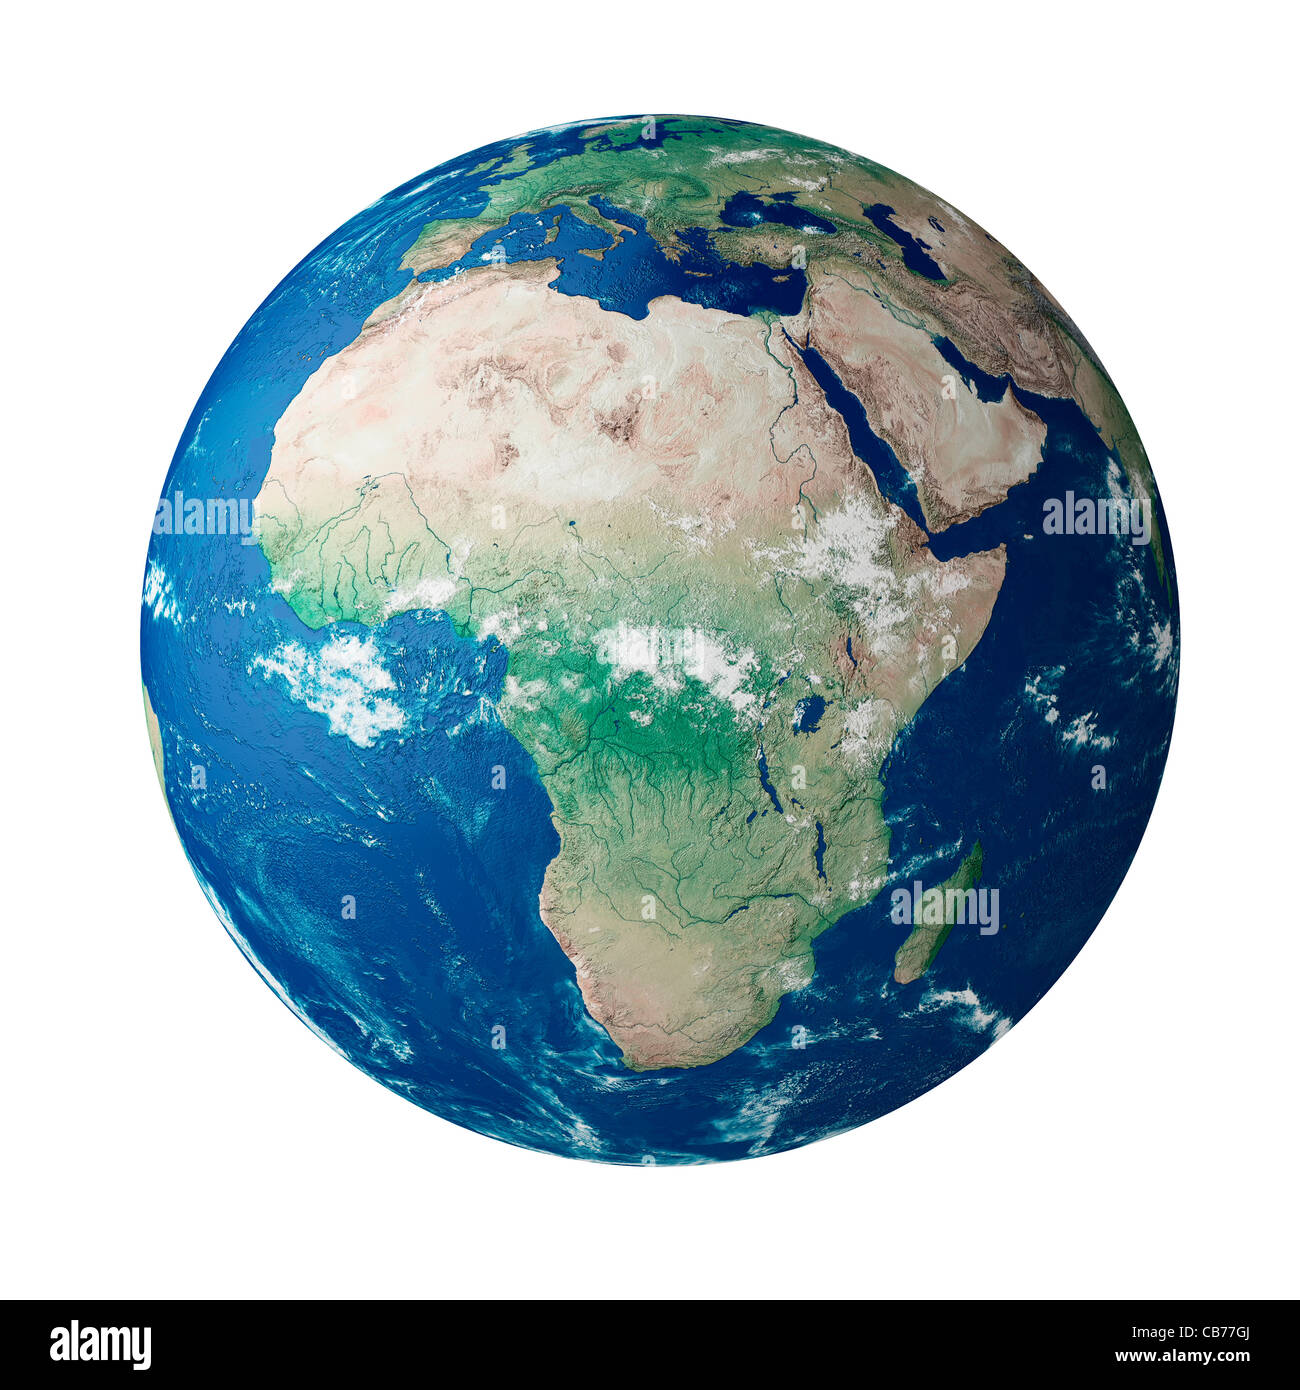 Globus mit dem afrikanischen Kontinent auf dem Planeten Erde Stockfoto